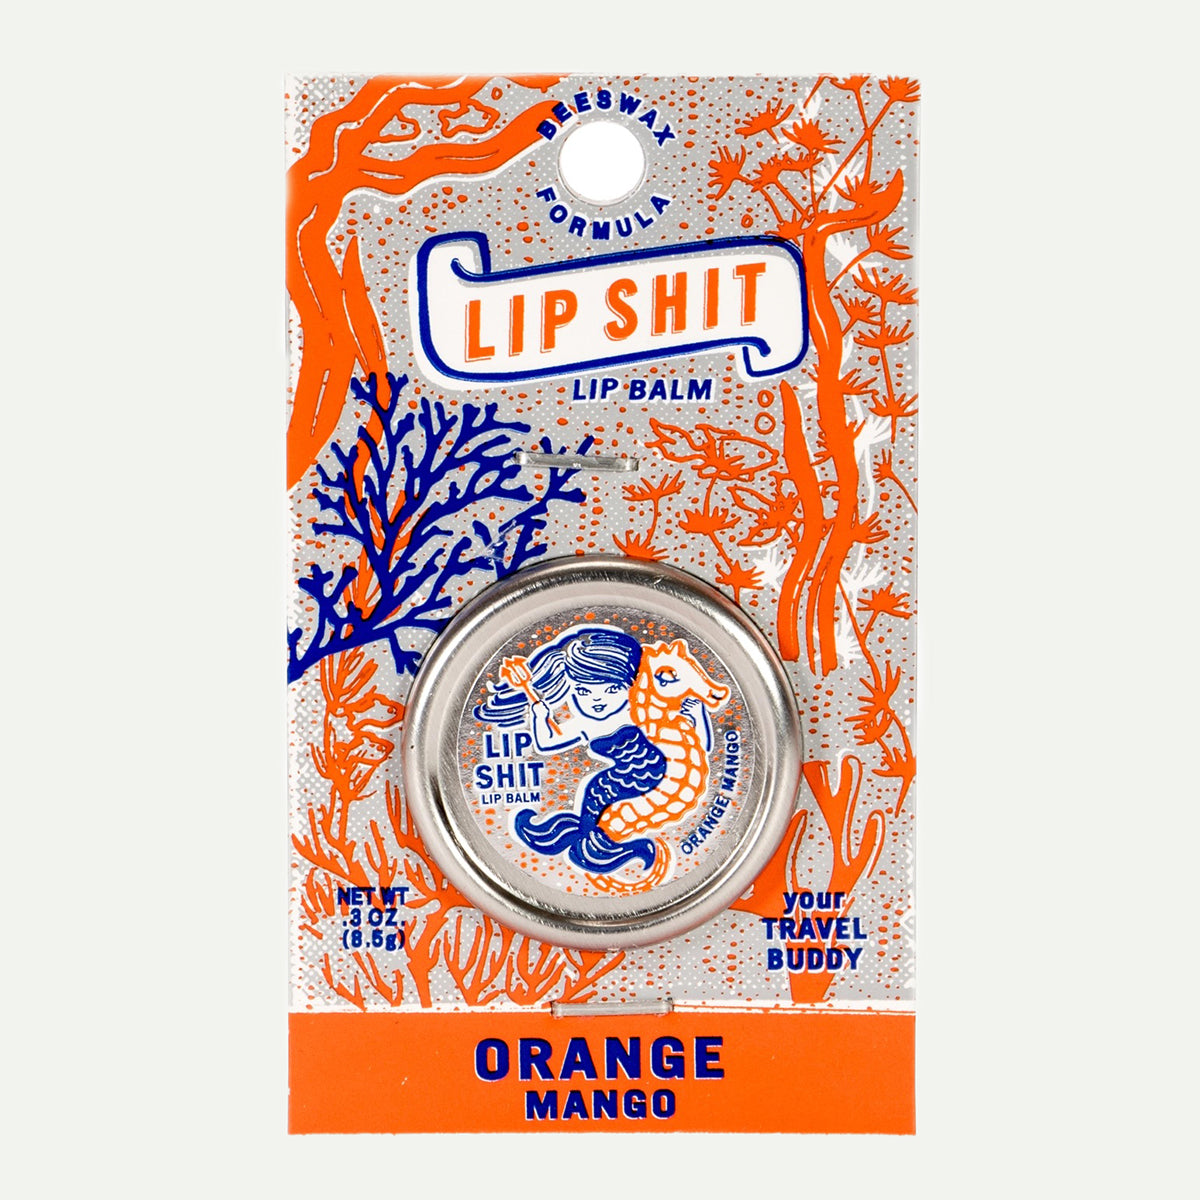 Incognito Orange Mango Lip Shit Lip Balm